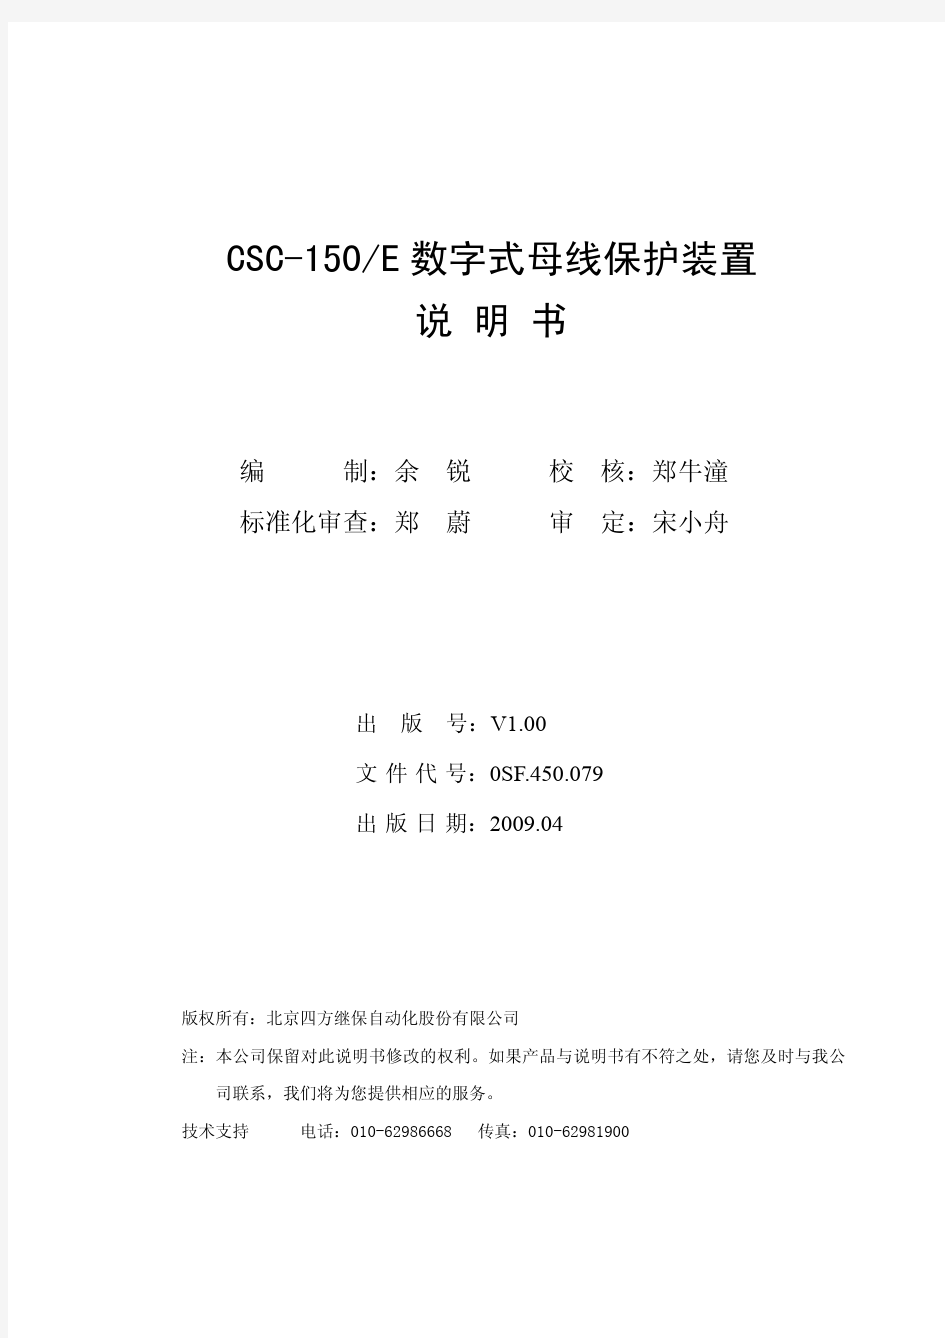 CSC-150E数字式母线保护装置说明书(0SF.450.079)_V1.0